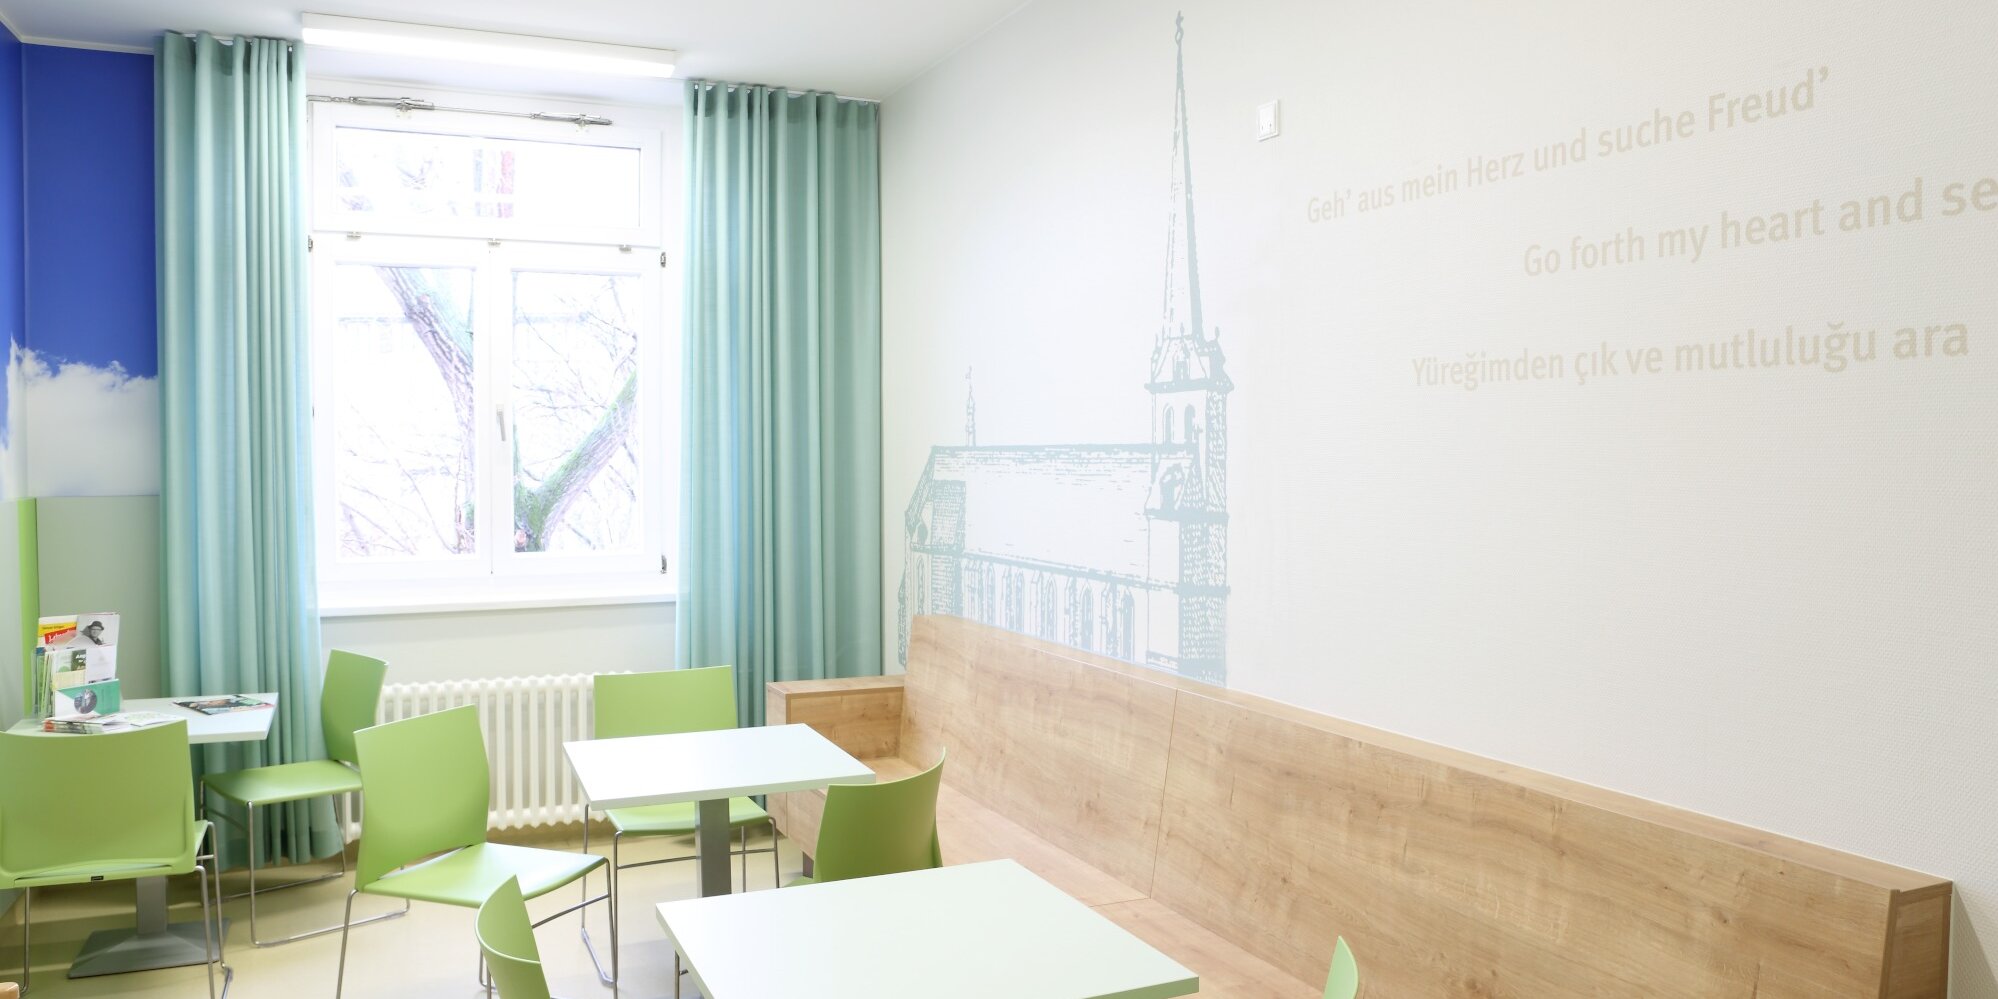 Großer und heller Aufenthaltsraum mit Sitzmöglichkeiten bestehend aus weißen Tischen und farblich passenden Stühlen. Die Wand, rechts im Raum ist zum Teil mit Holz verkleidet sowie mit einem Berlin-Motiv verziert. Das Fenster am Kopf des Raumes ist mit blauen Vorhängen versehen.